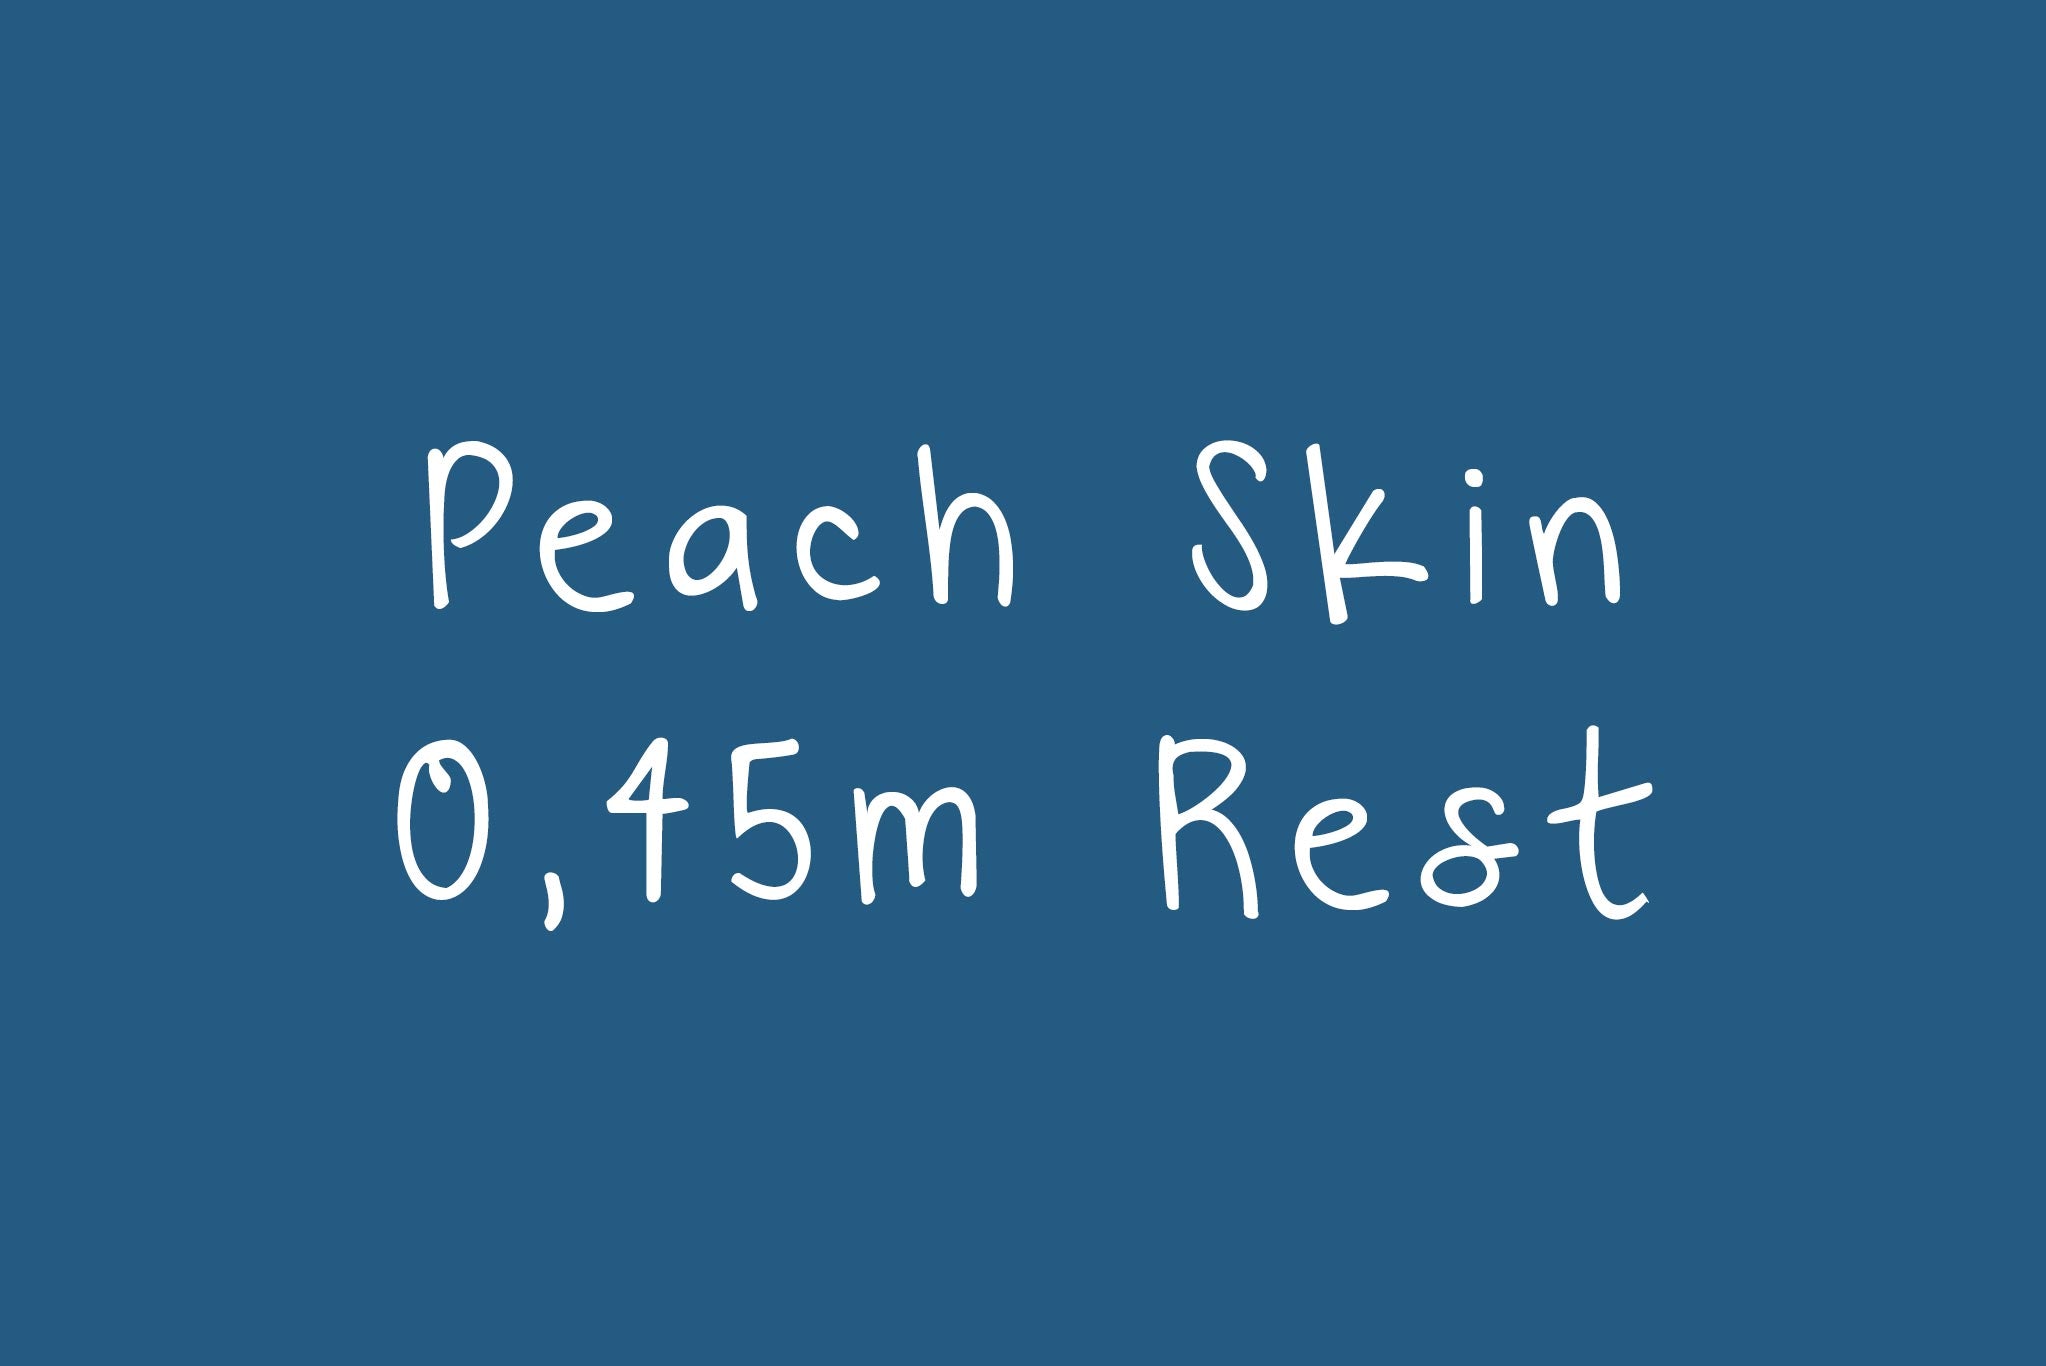 Peach Skin "Rest" 0,45 m